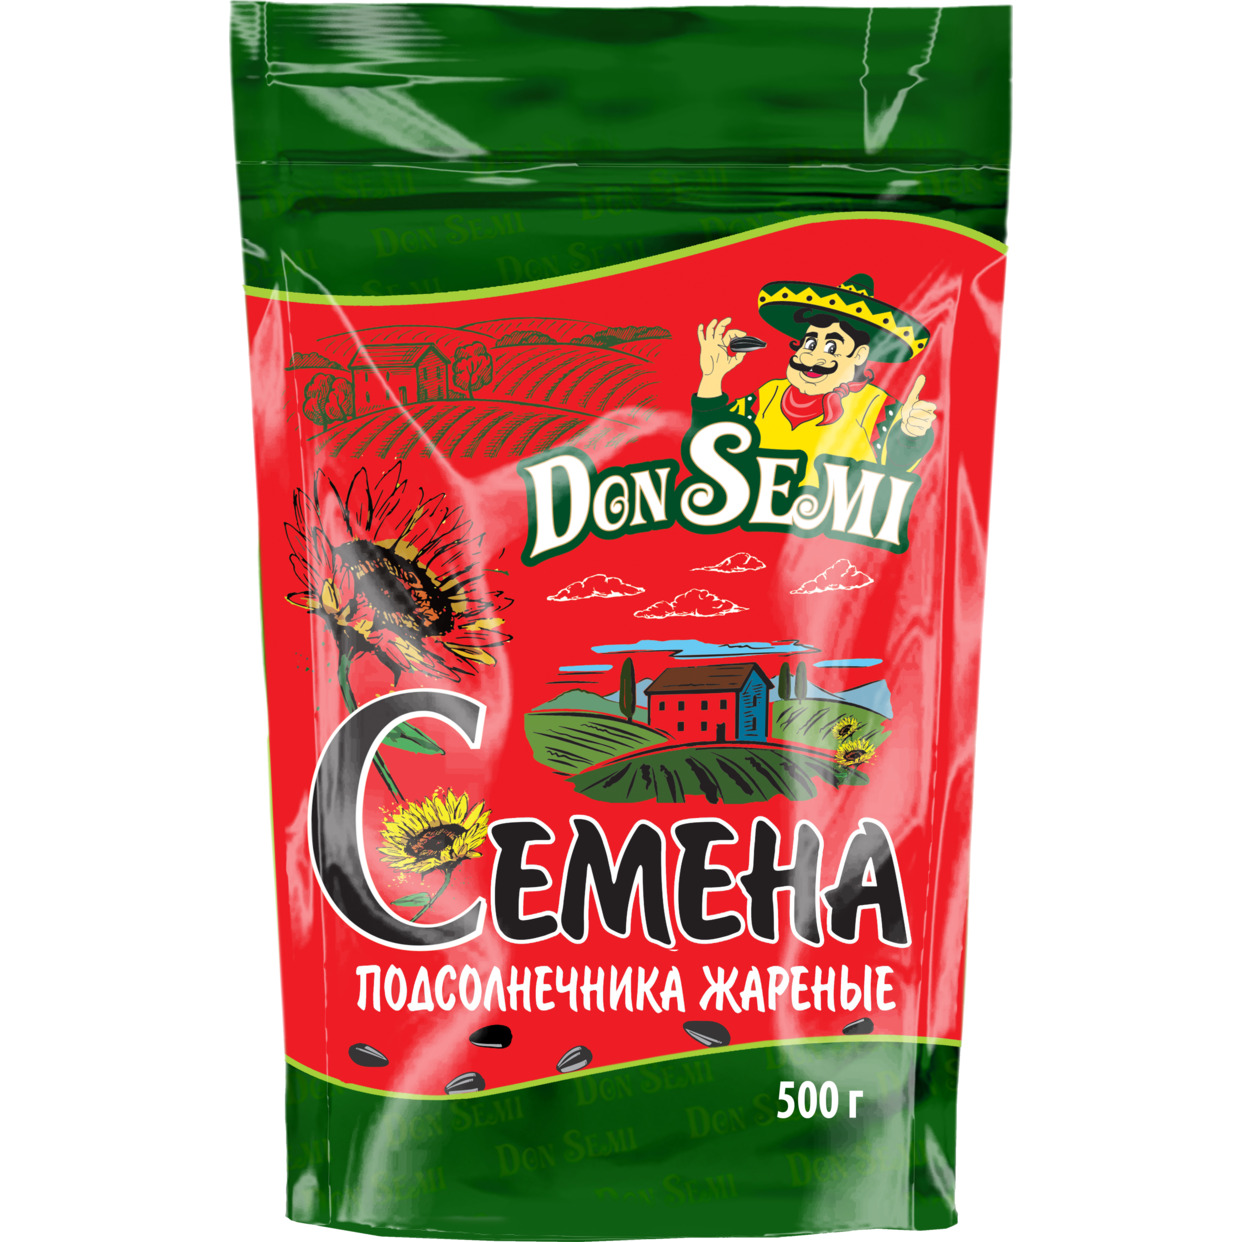 Don’ Semi Семена подсолнечника жареные (дой-пак с замком зип-лок) 500 г